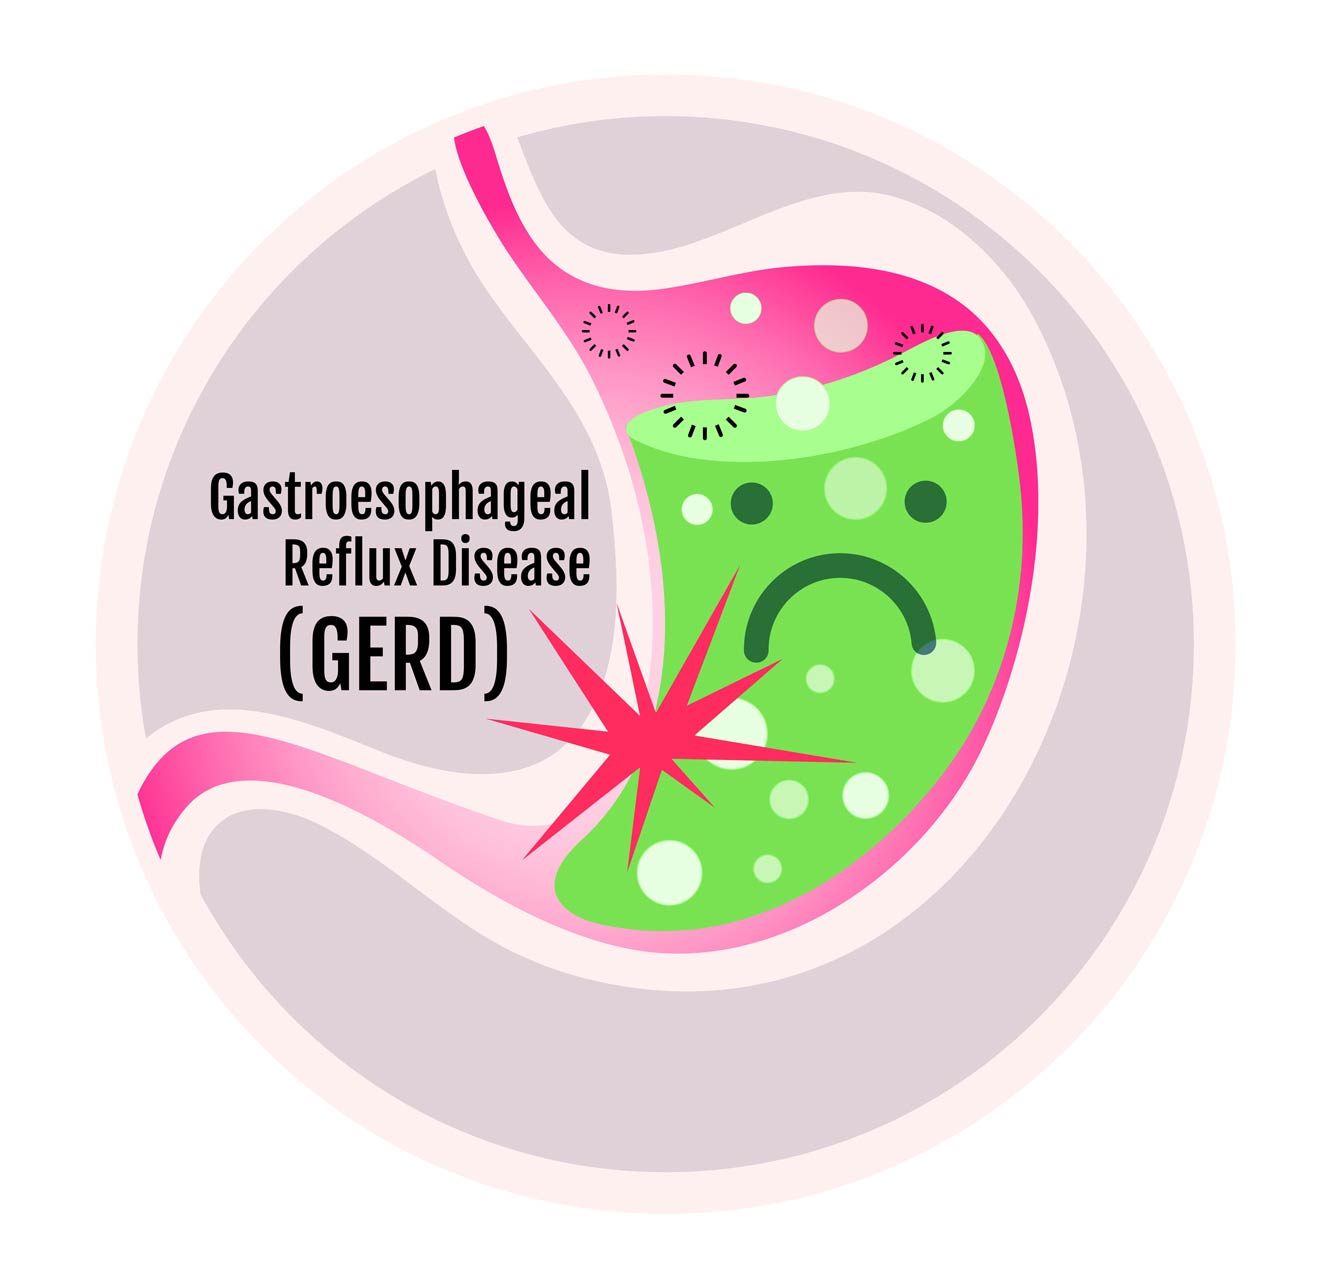 Gastroesophageal reflux disease (GERD) illustration